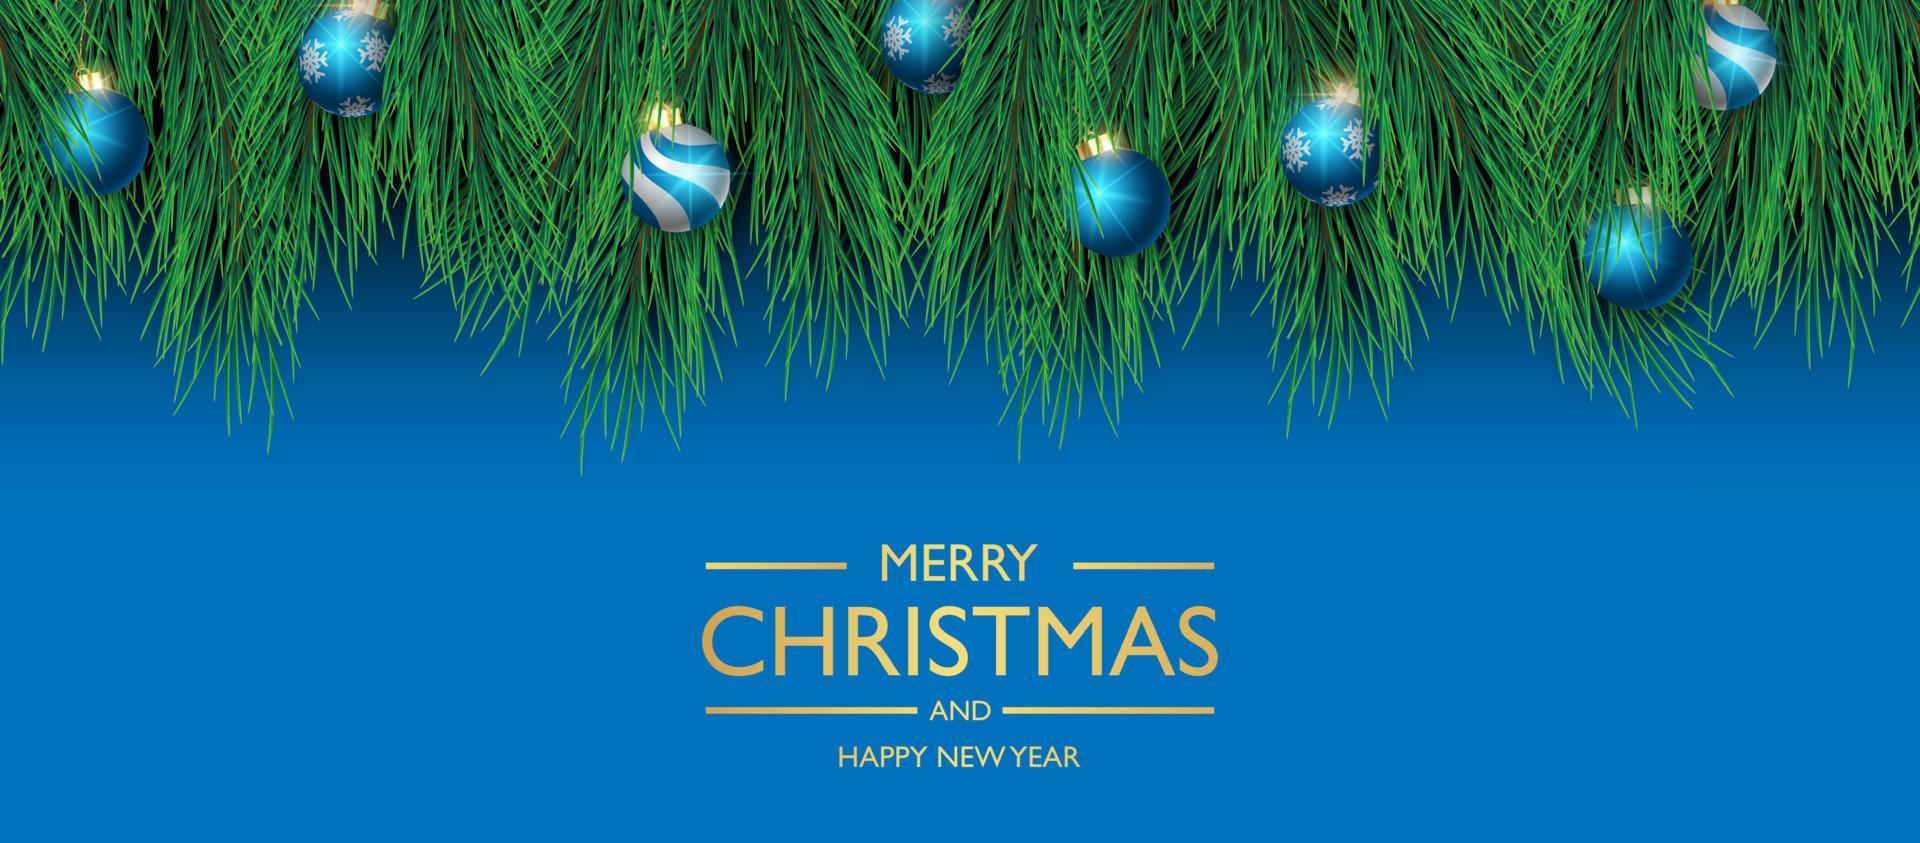 ontwerp van de achtergrond van de banner van Kerstmis op blauwe achtergrond, Kerstmis dekking achtergrond naadloze patroon, wenskaart, vectorillustratie vector